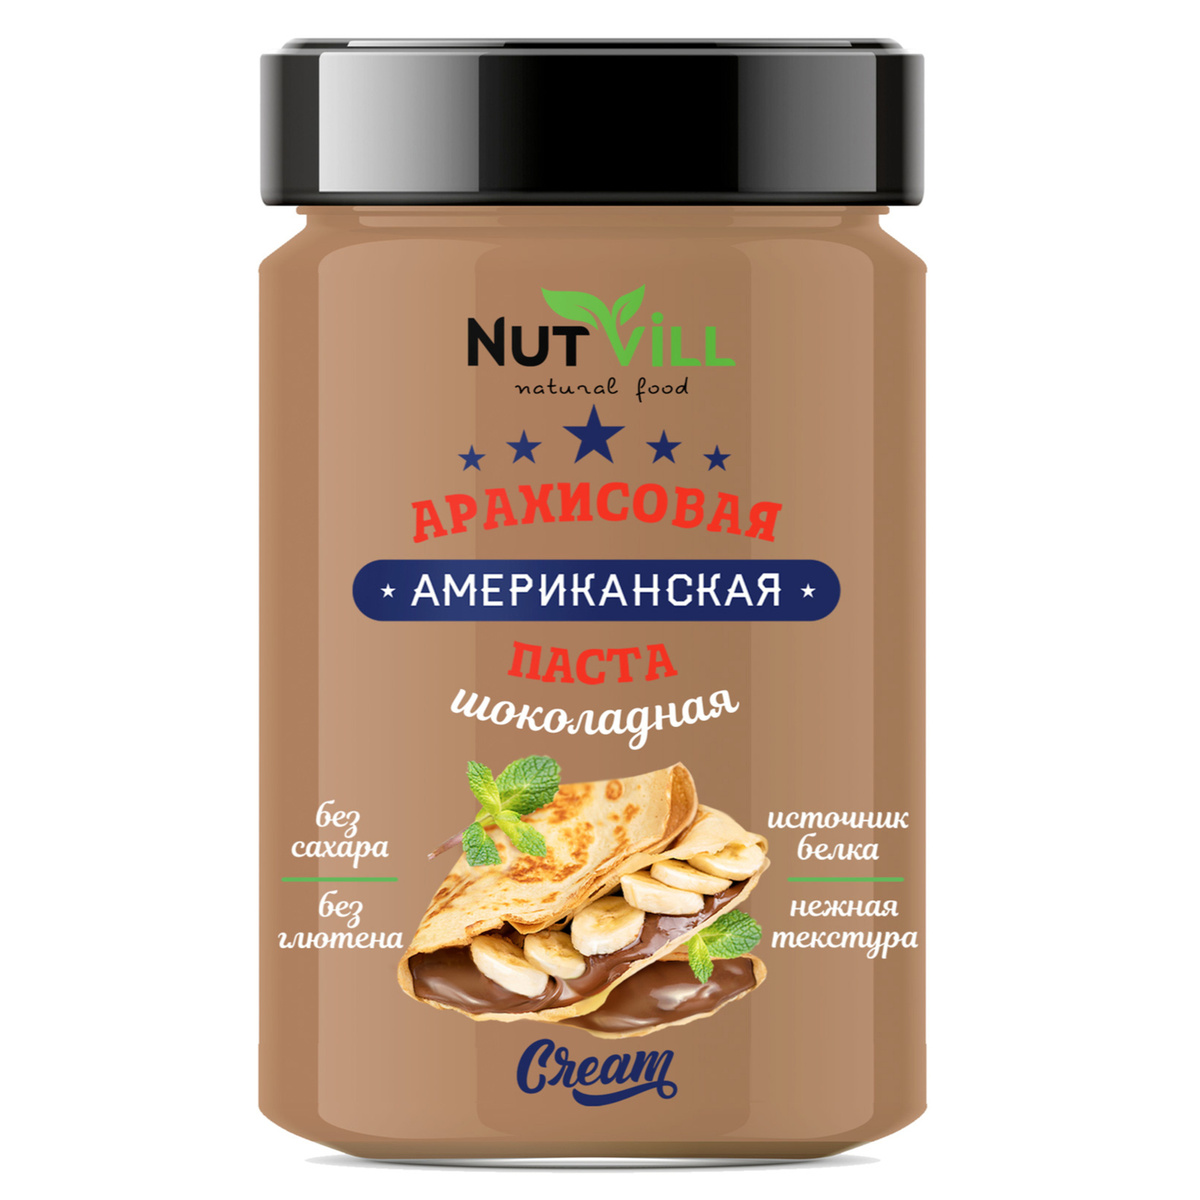 Паста "Американская" арахисовая Шоколадная, Nutvill, 180г